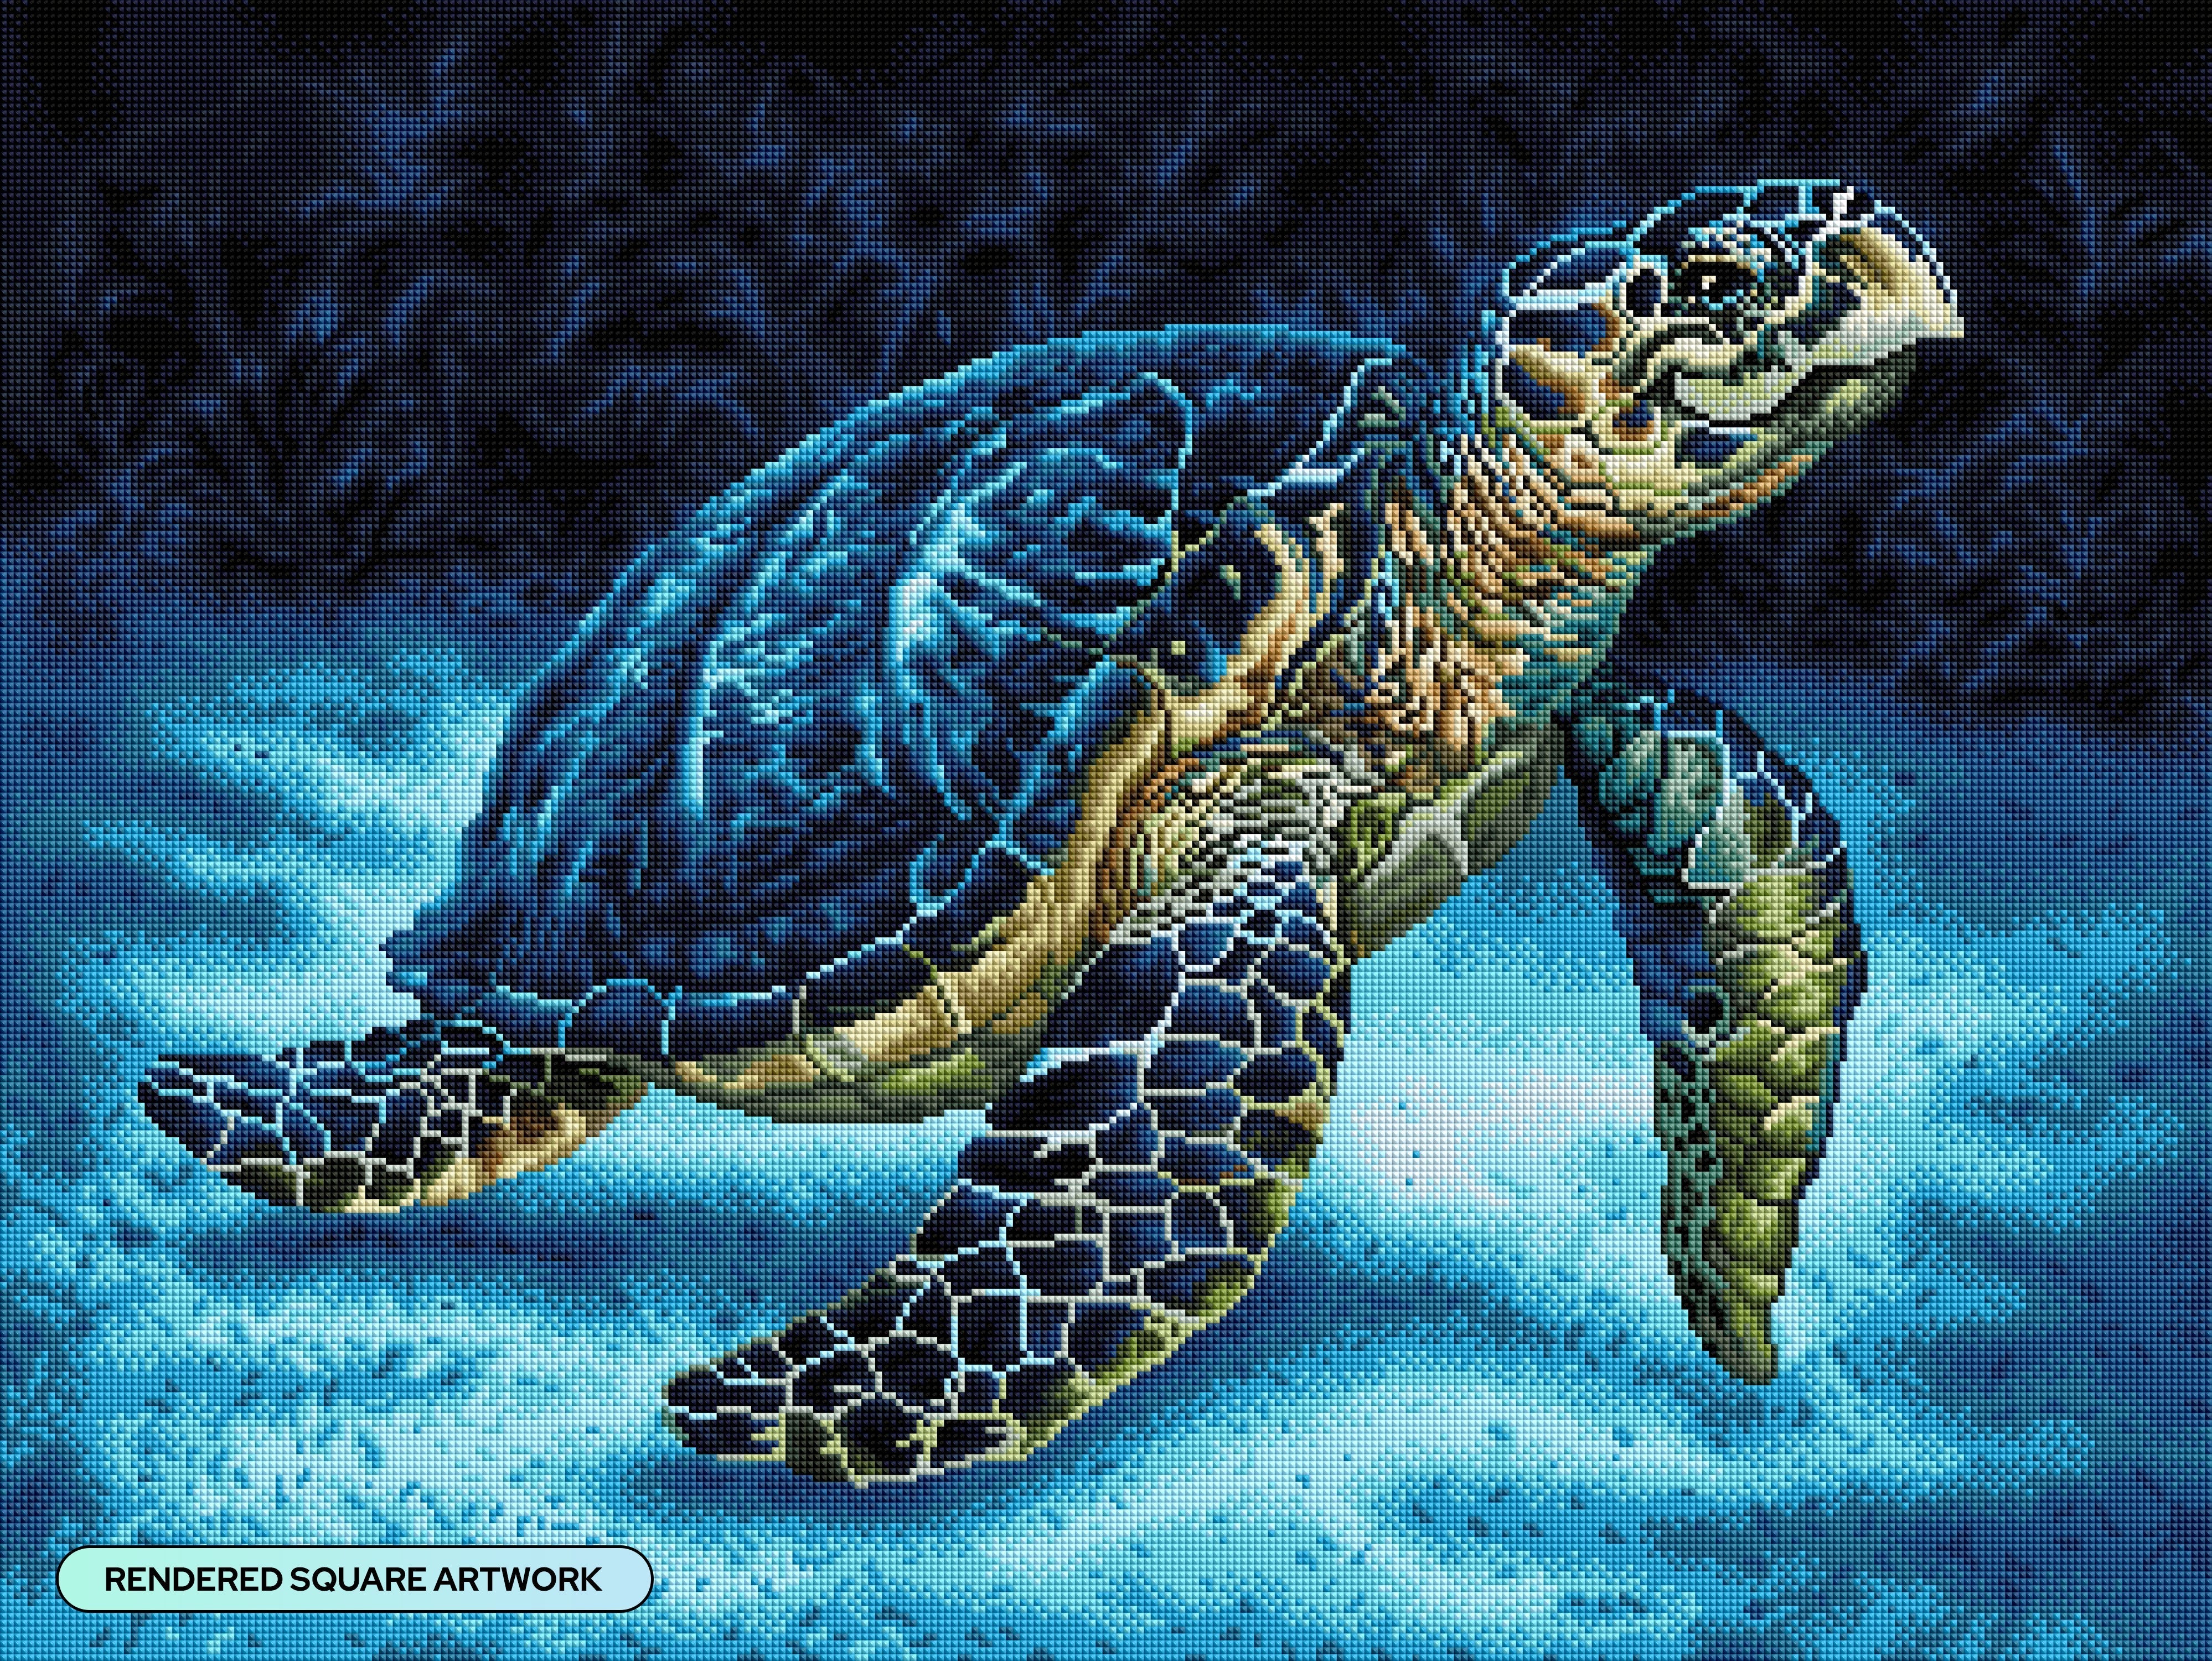 #1 DIY Diamond Art Painting Kit - Smiling Sea Turtle | Diamond Painting Kit | Diamond Art Kits for Adults | Diamond Art Club